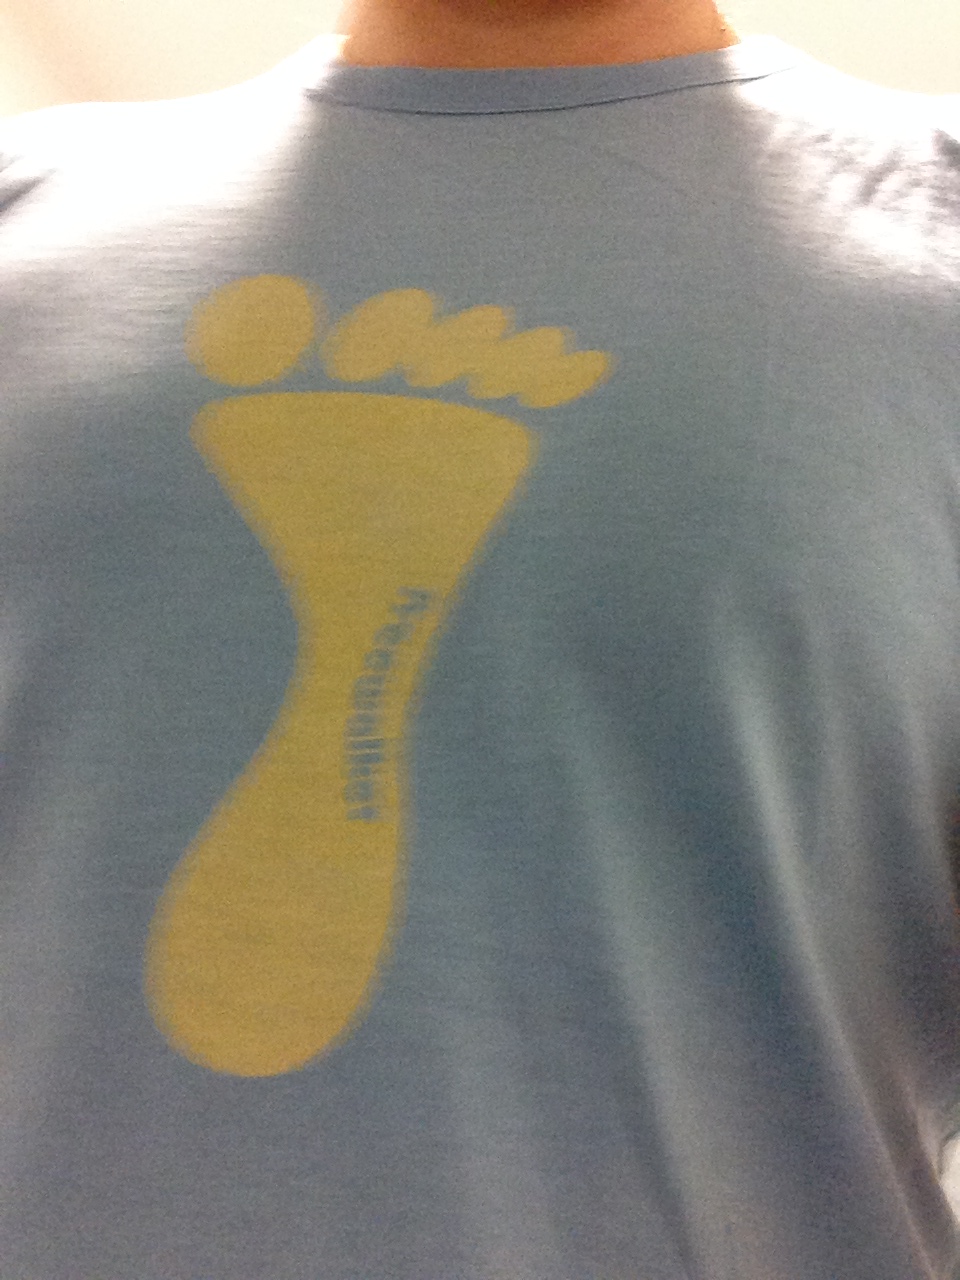 Camiseta azul con un pie amarillo en medio perteneciente a Andrés Toledo